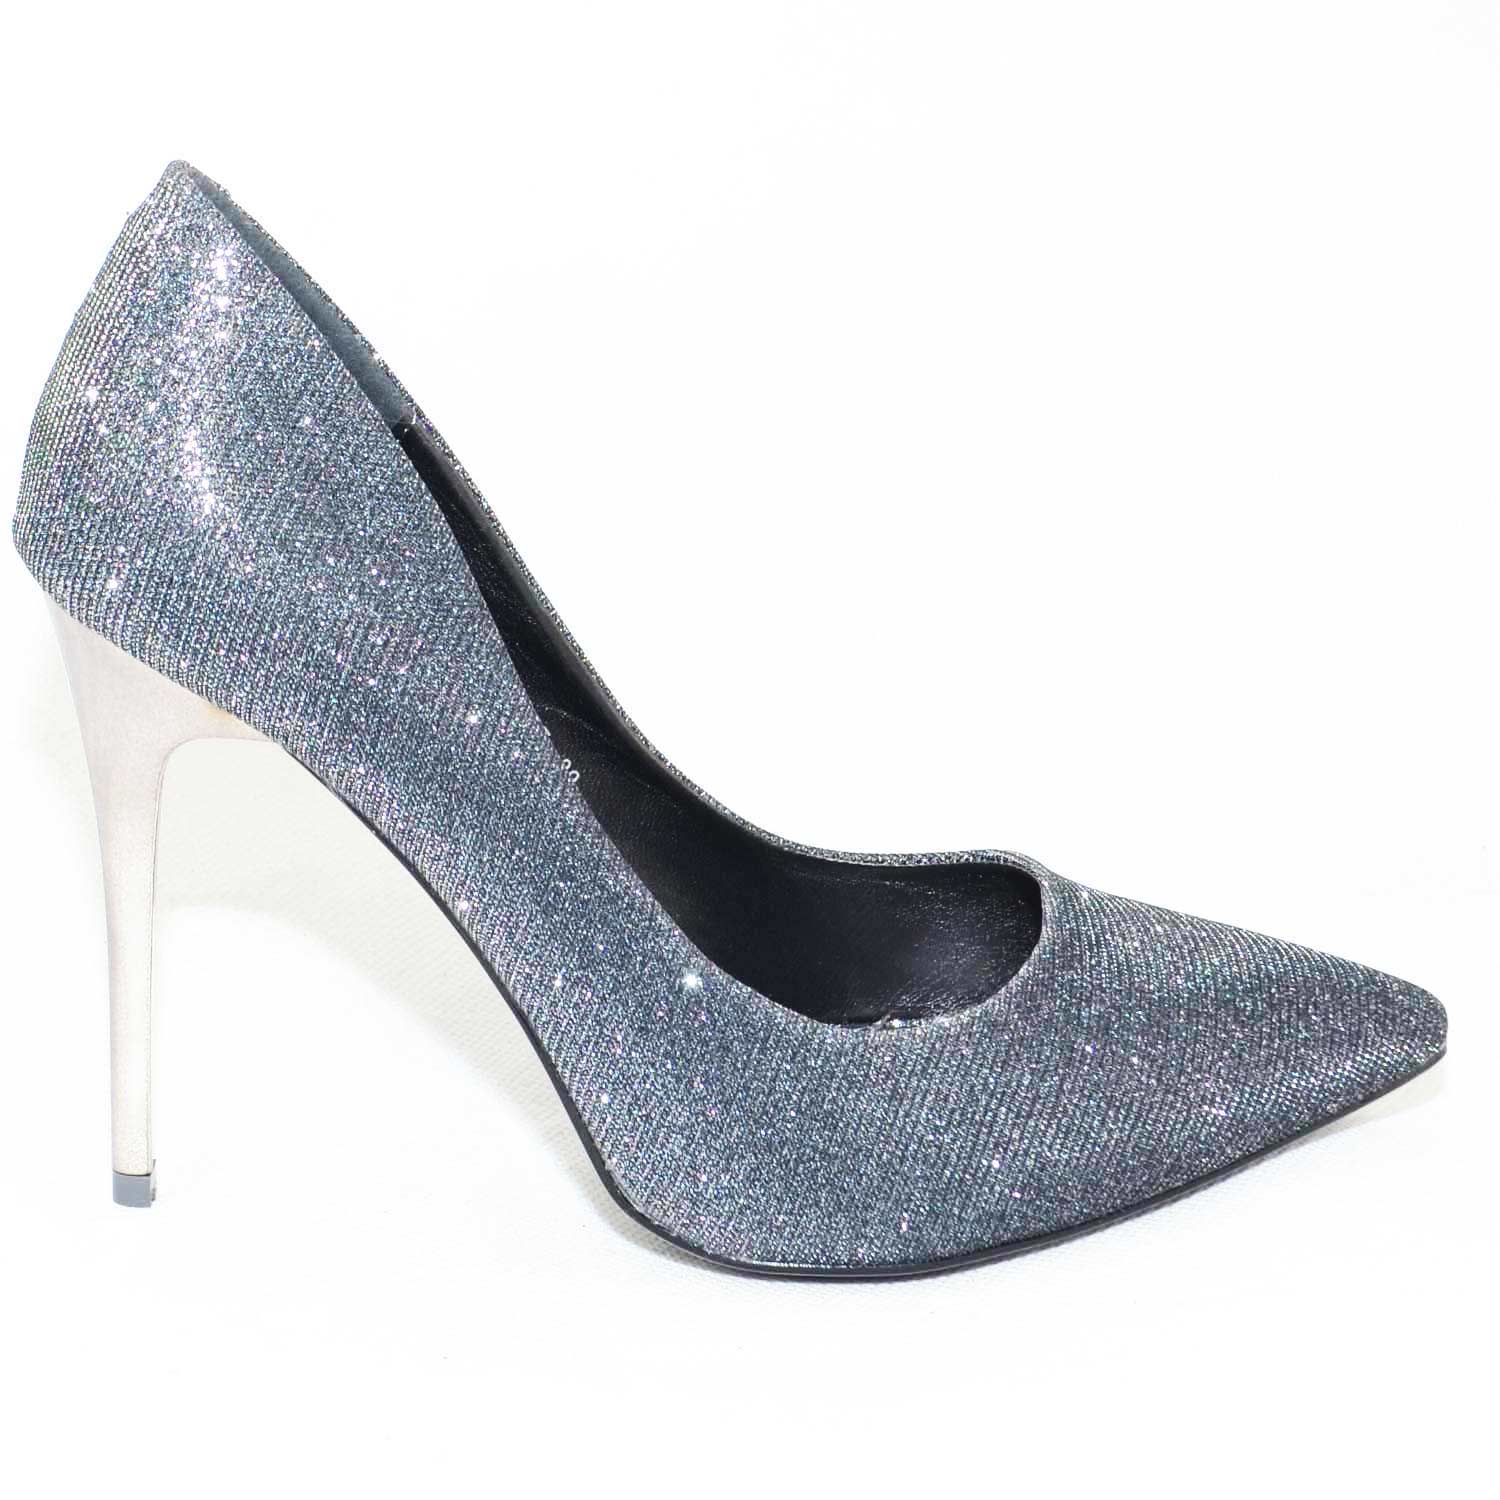 scarpe donna eleganti moda a punta in tessuto glitterato grigio tacco a spillo lucido glamour